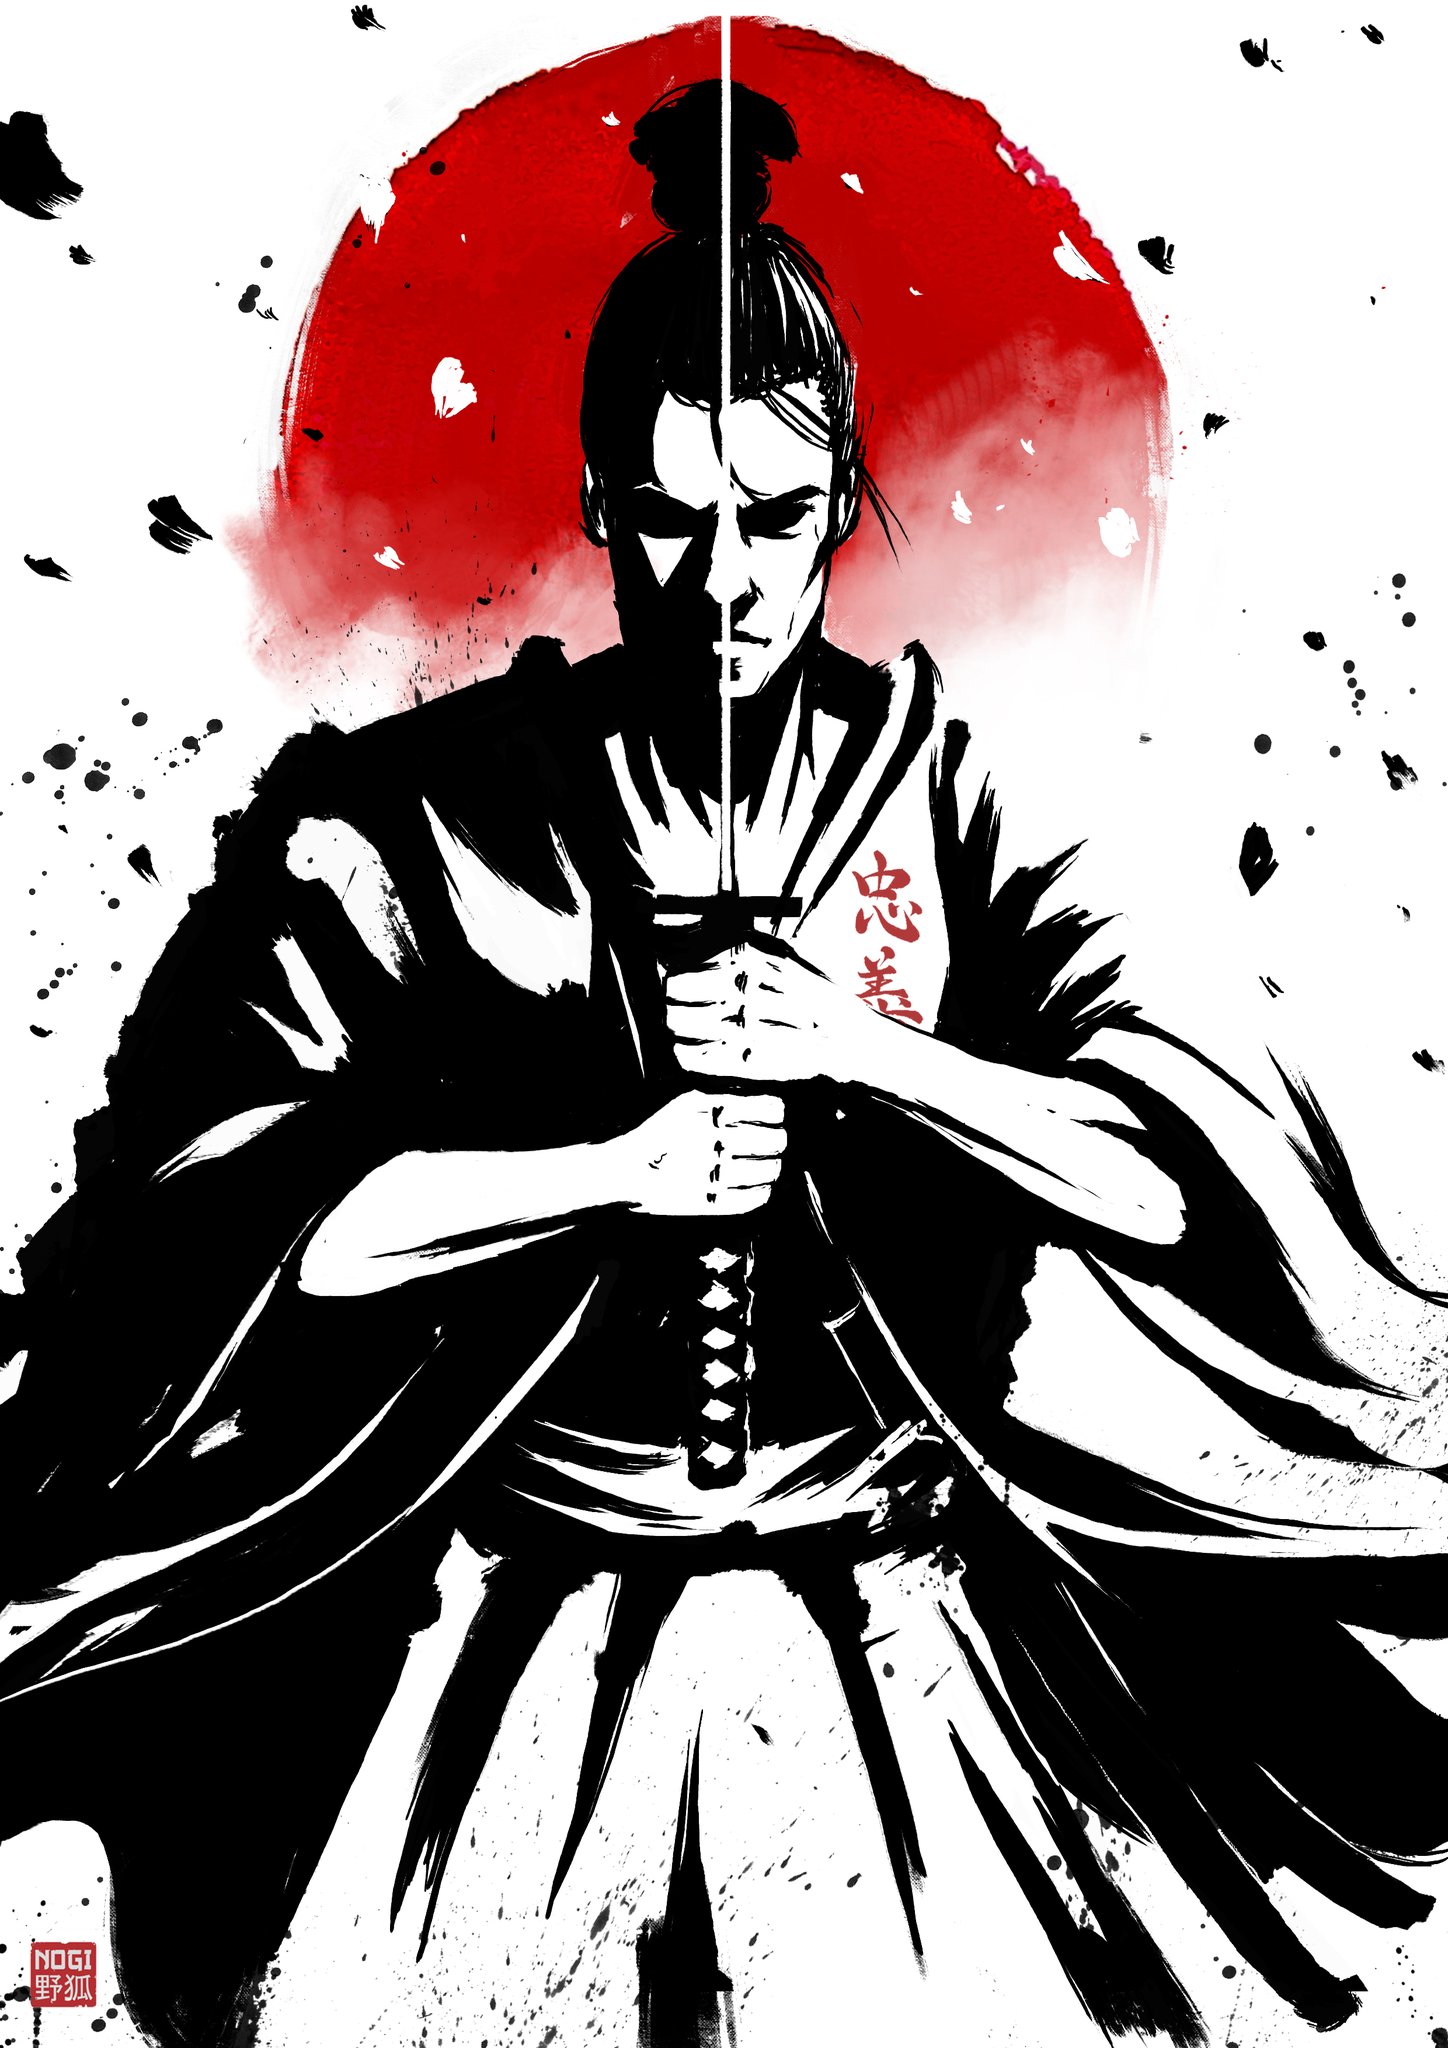 Bushido - The Samurai's Code